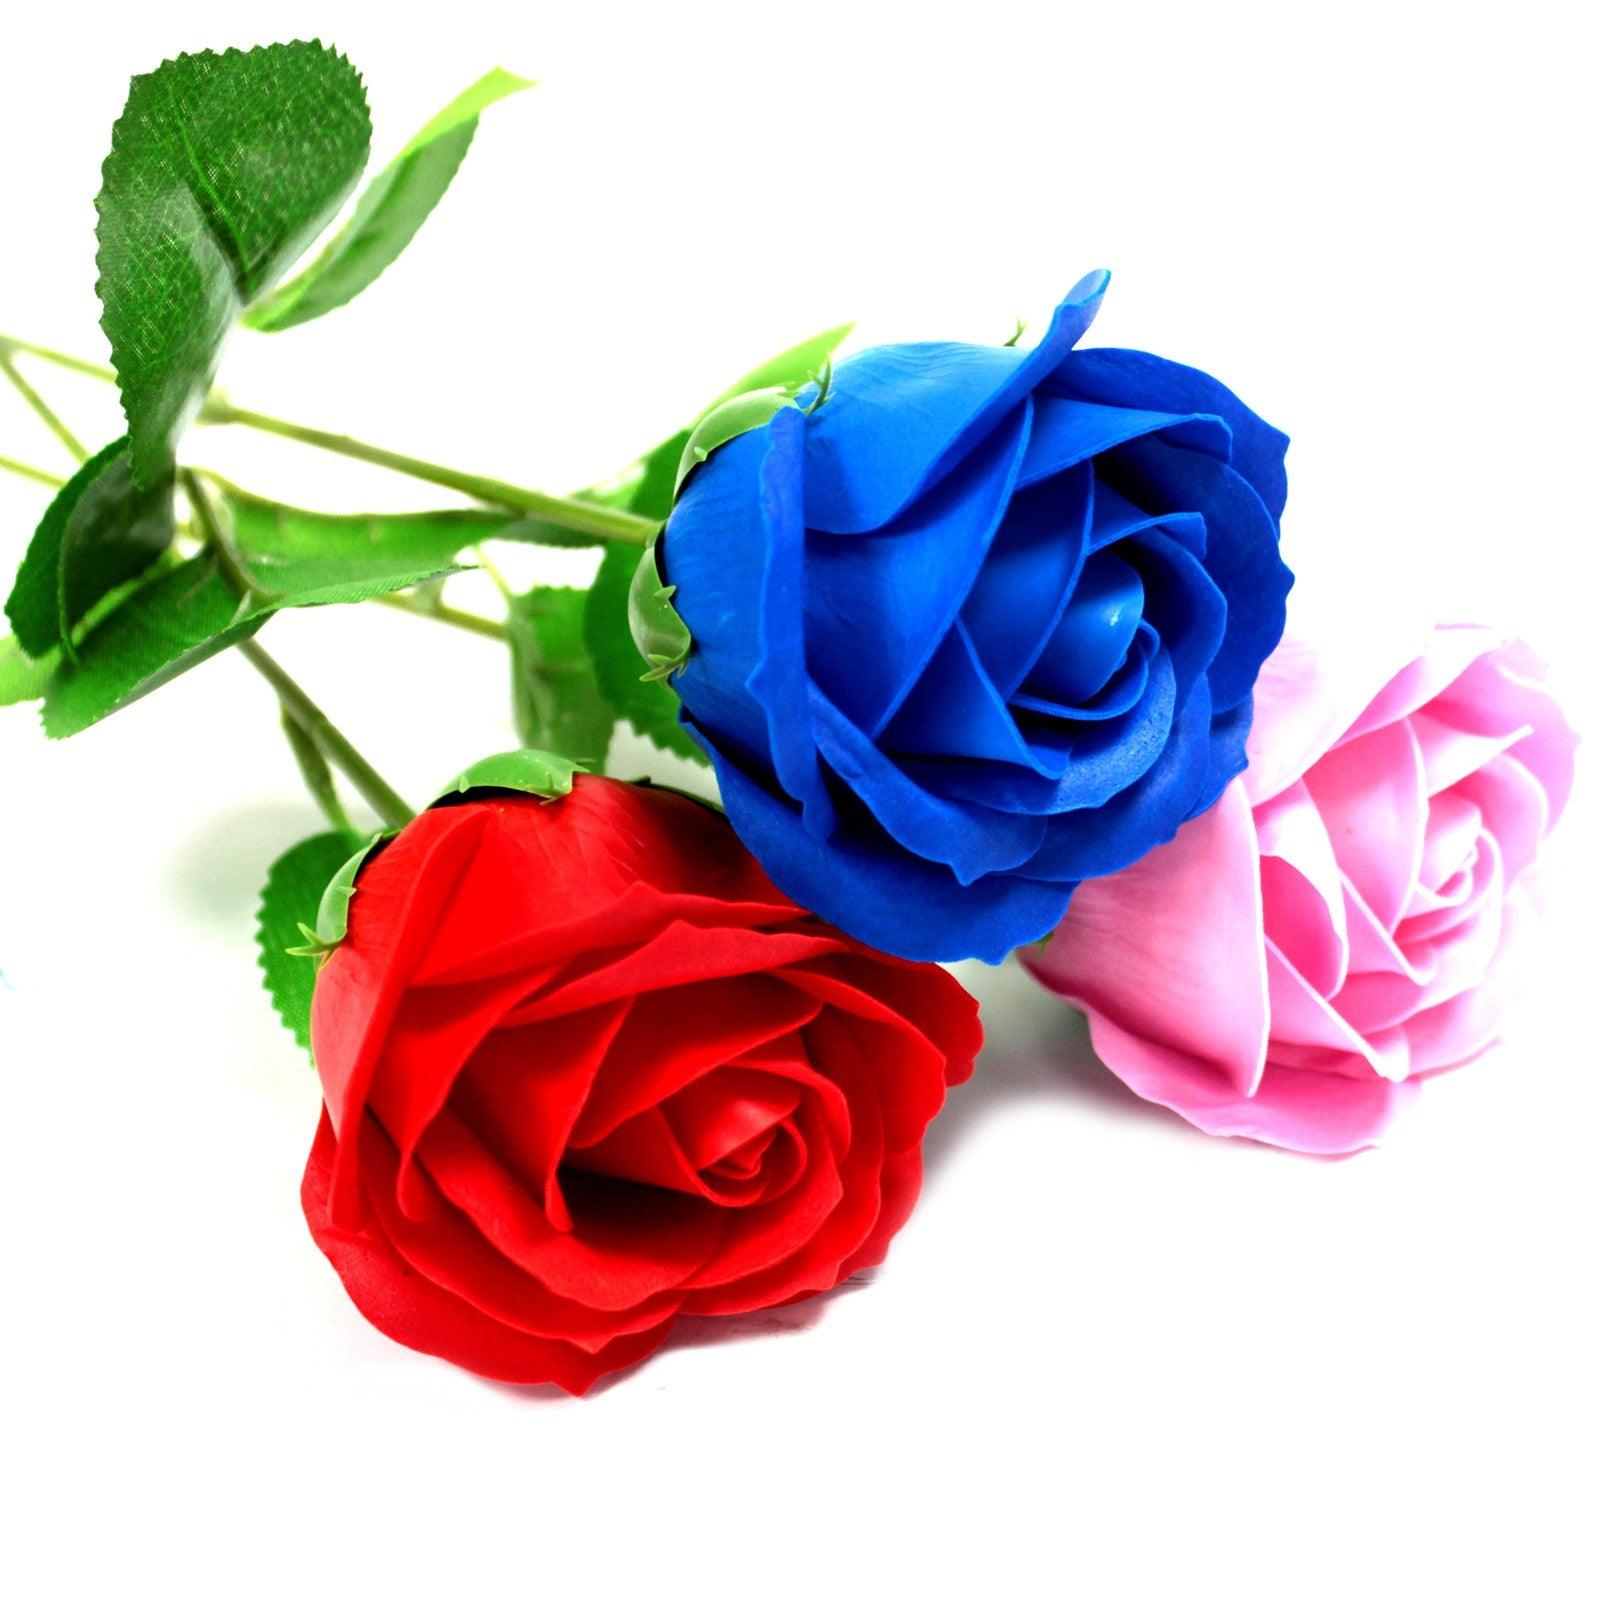 Single Rose - Red Rose - DuvetDay.co.uk